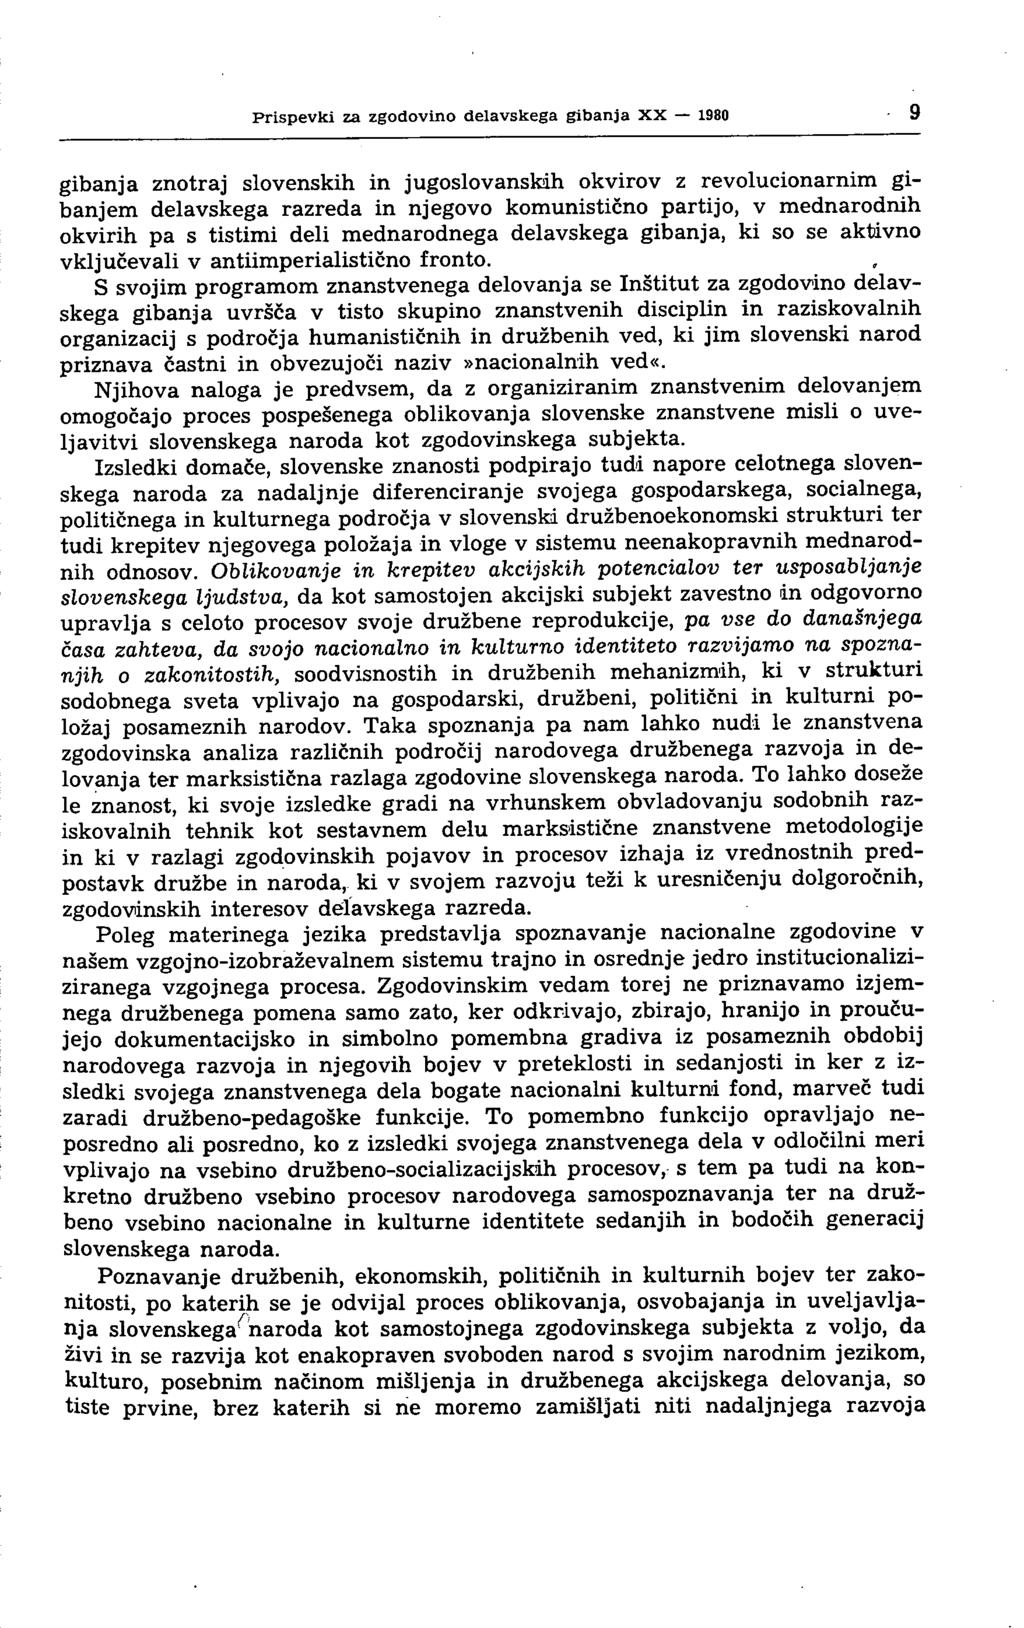 Prispevki za zgodovino delavskega gibanja XX 1980 gibanja znotraj slovenskih in jugoslovanskih okvirov z revolucionarnim gibanjem delavskega razreda in njegovo komunistično partijo, v mednarodnih